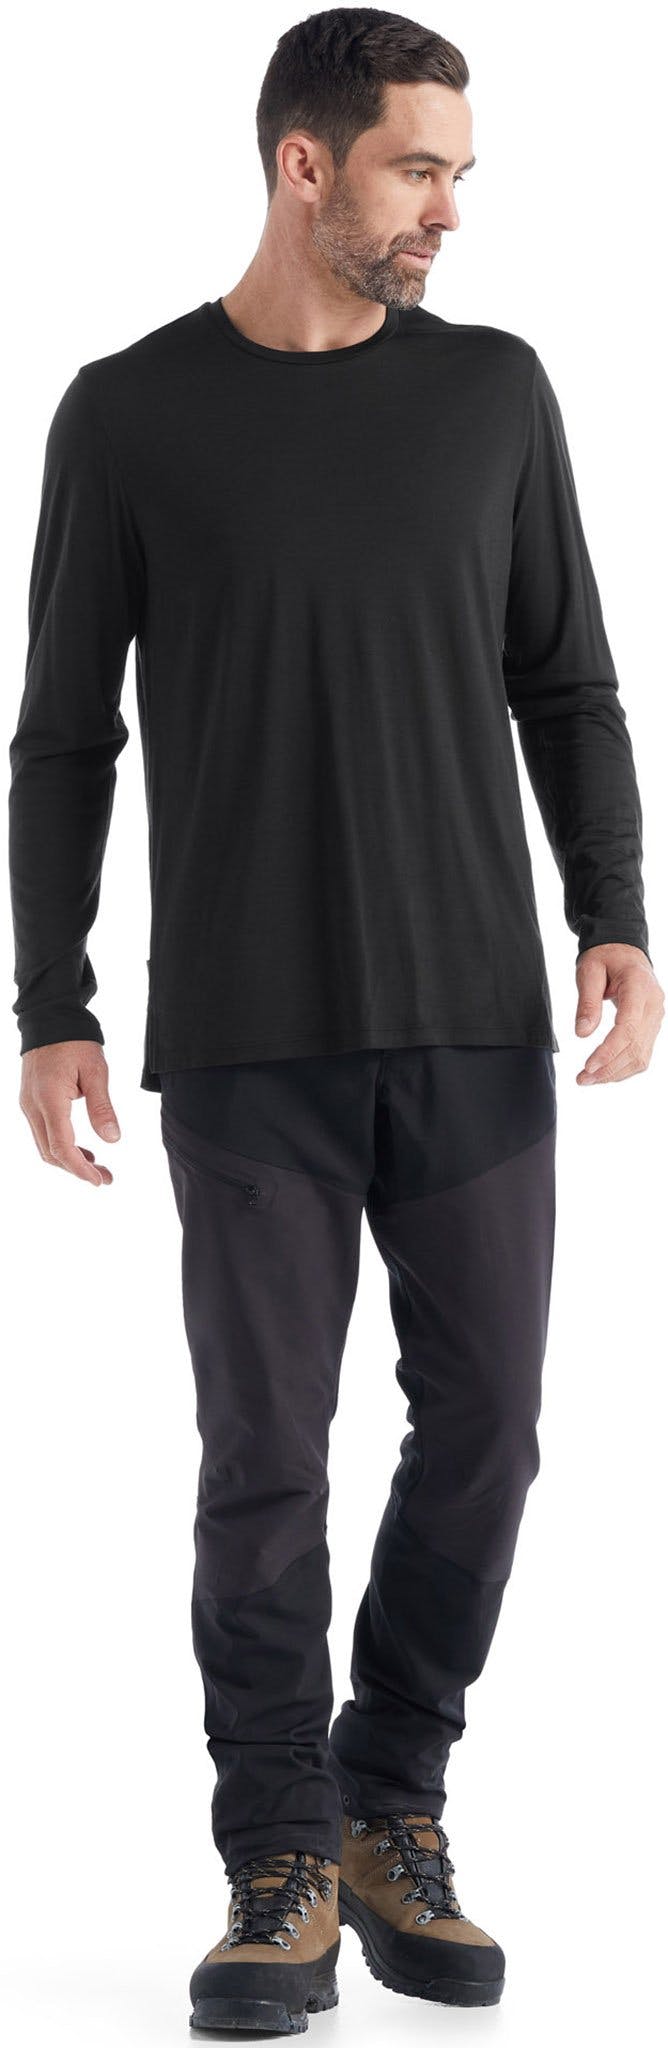 Numéro de l'image de la galerie de produits 6 pour le produit T-shirt à manches longues Sphere II - Homme